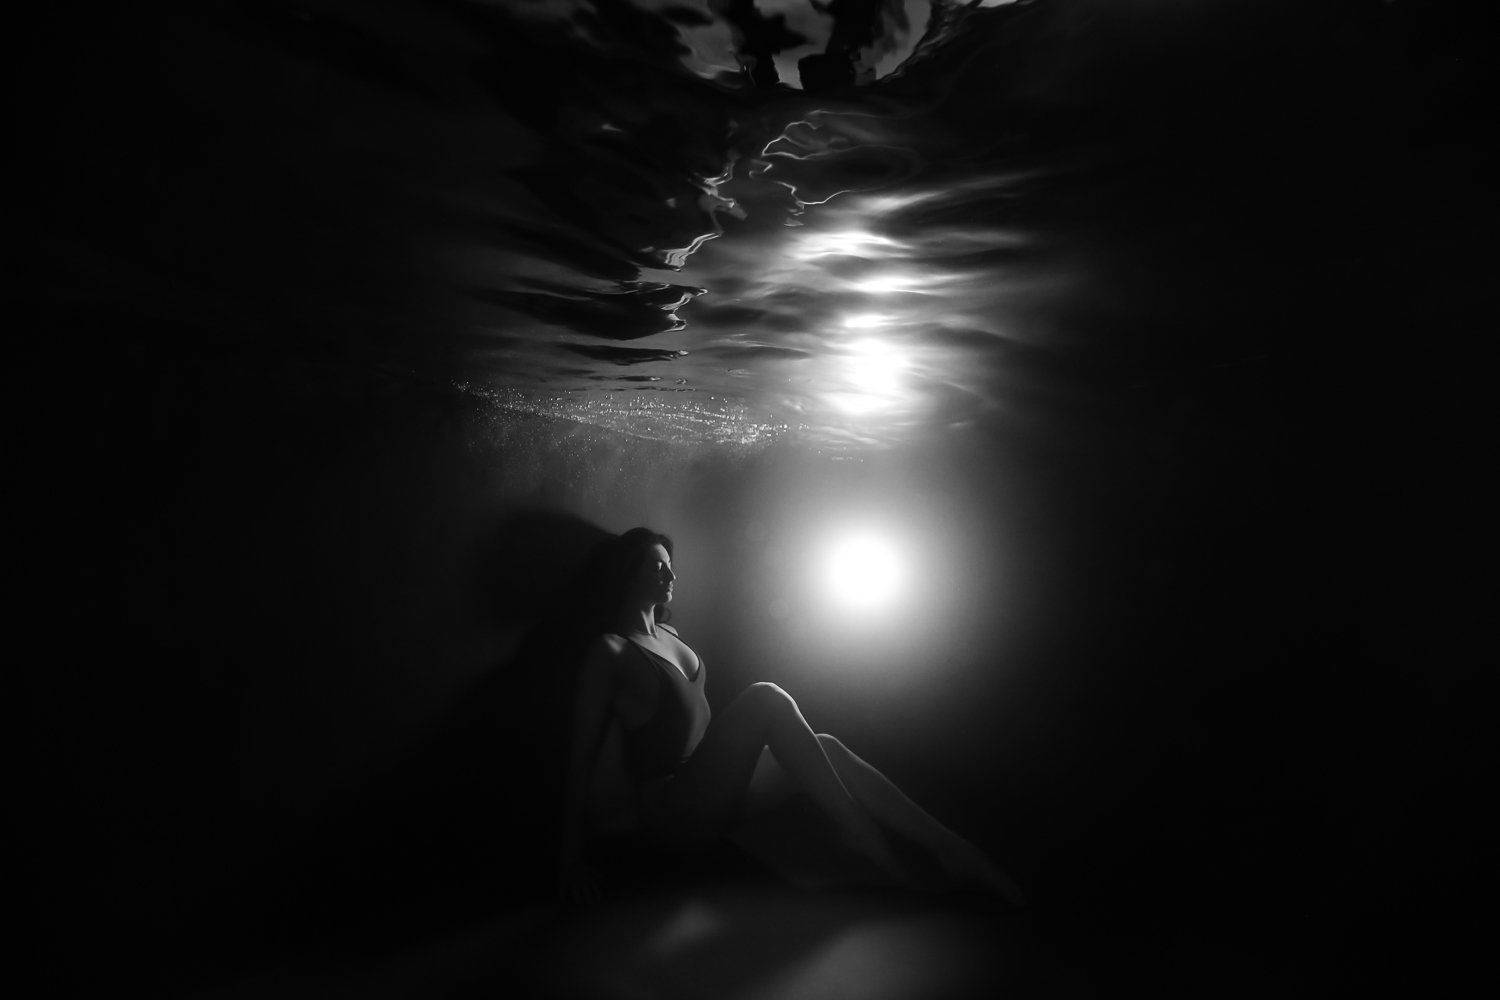 Photographe subaquatique portrait de femme